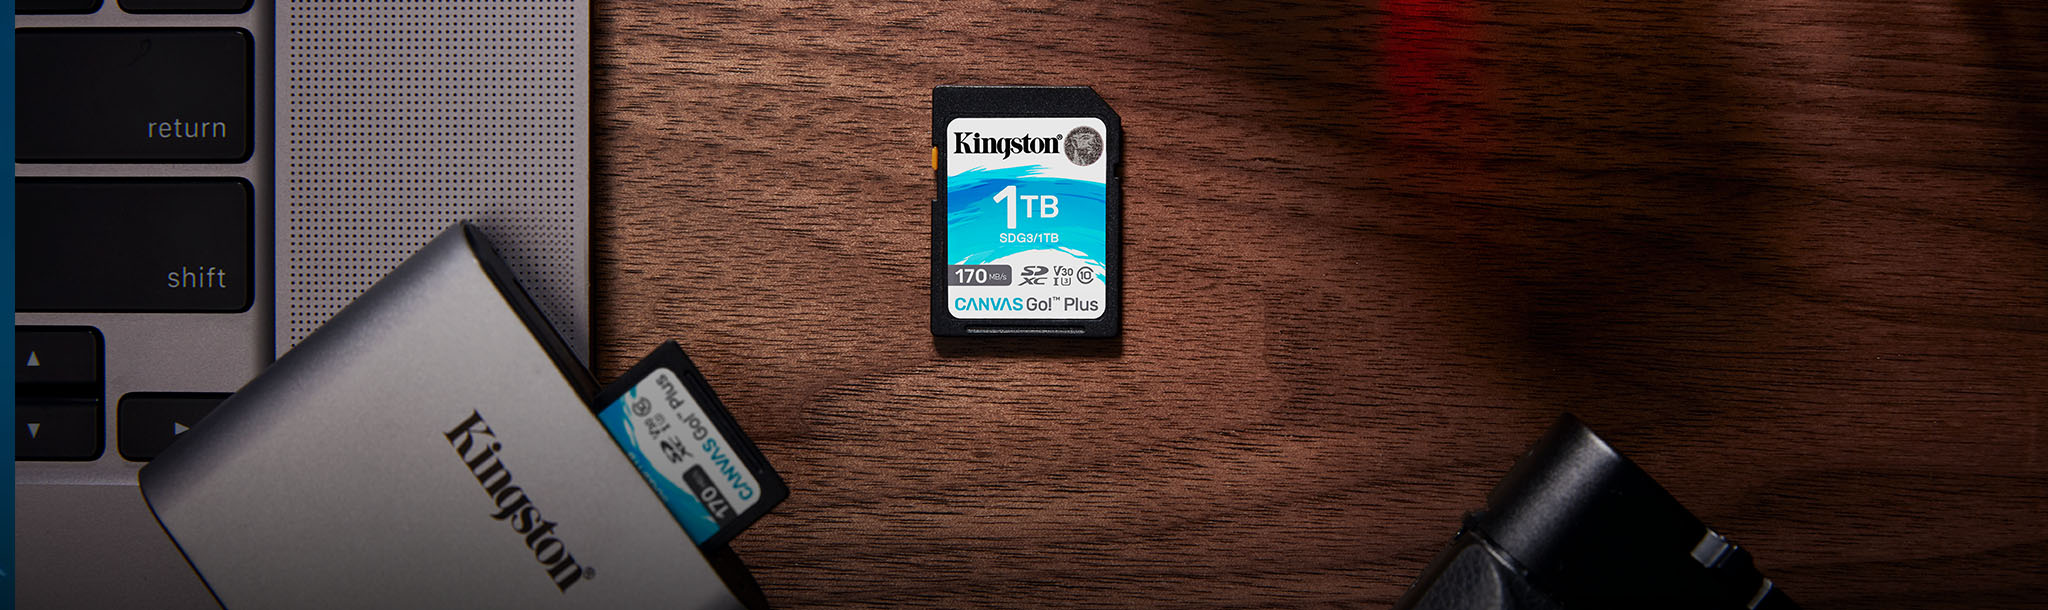 Dzięki pojemności do 1TB karta pamięci SD Canvas Go! idealnie nadaje się do zapisu zdjęć i filmów w rozdzielczości 4K.